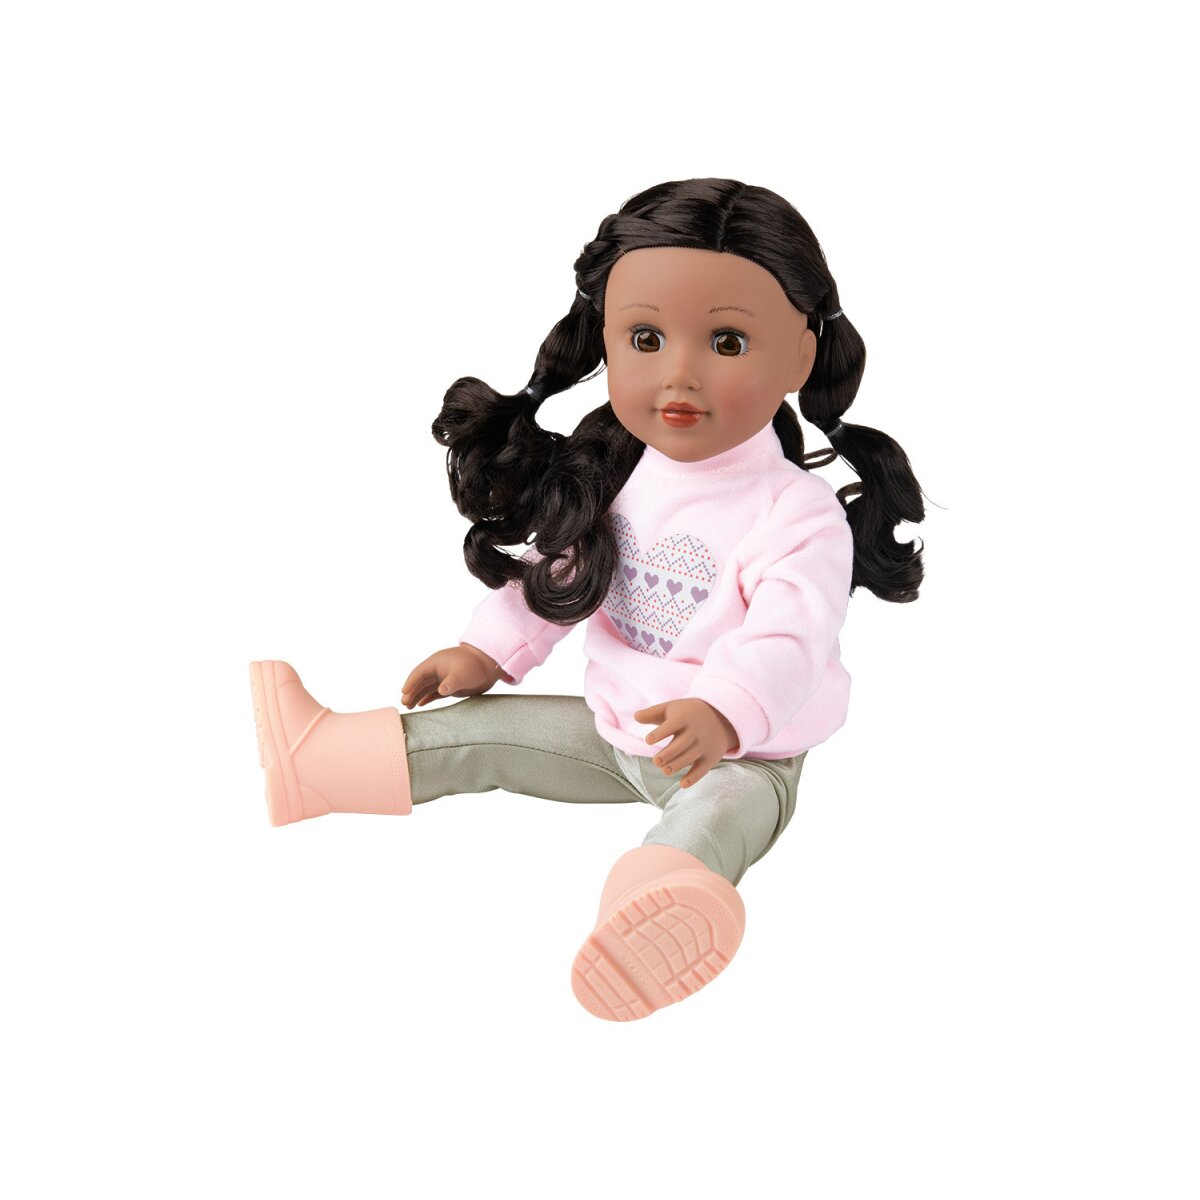 Playtive Puppe »Julia«, mit schönen, dicken Haaren zum Frisieren - B-Ware,  17,99 € | Puppen